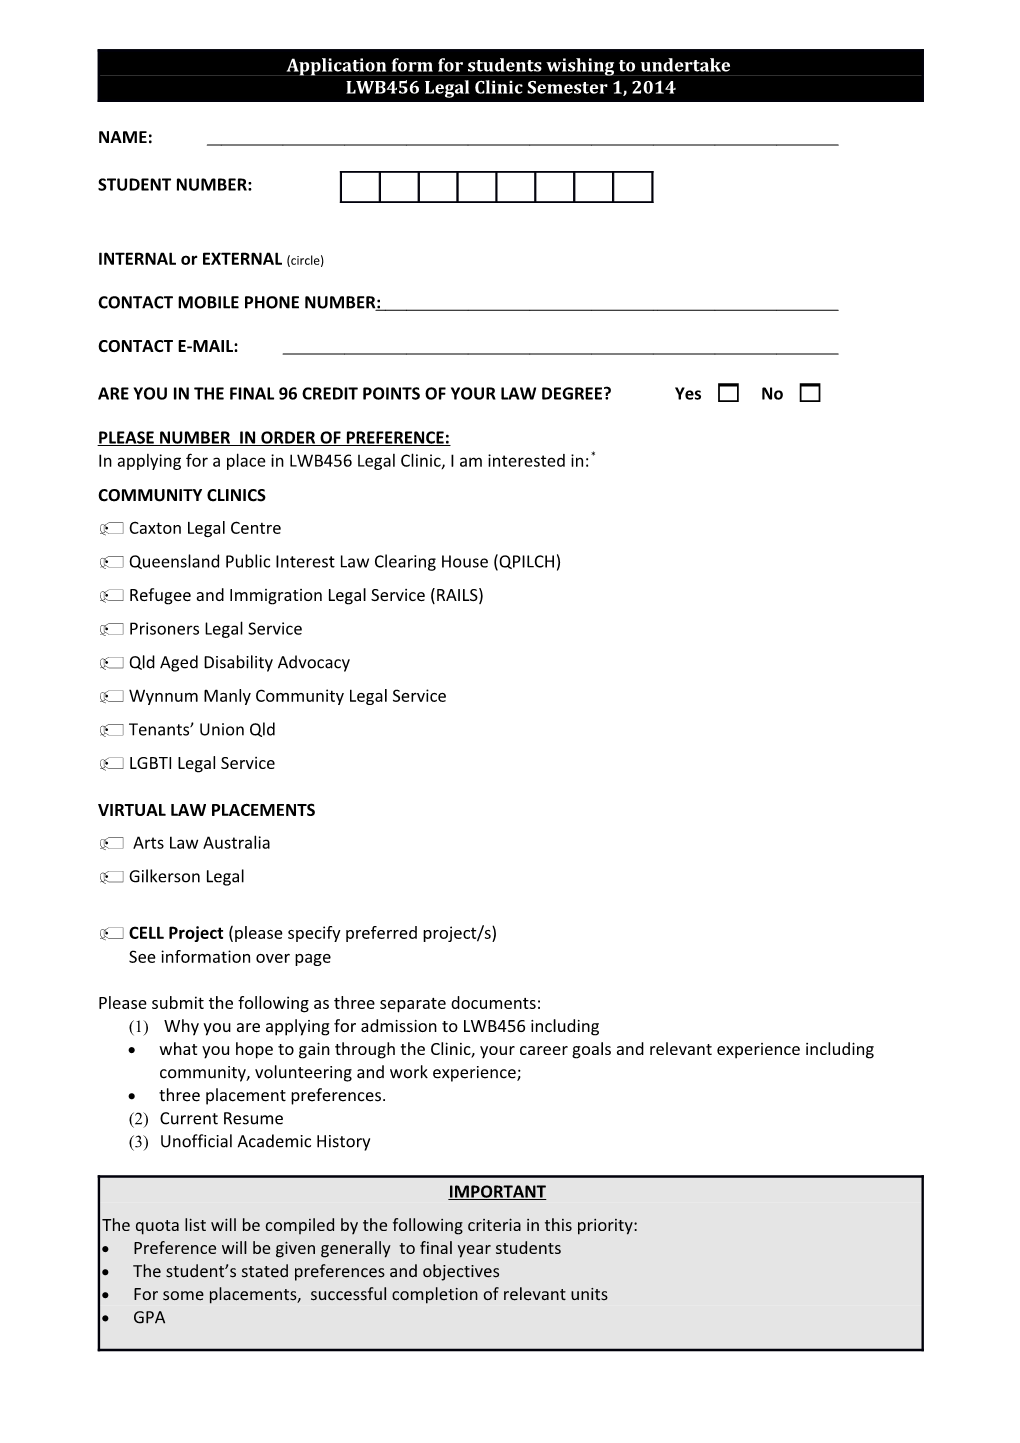 LWB456 Legal Clinic Application Form